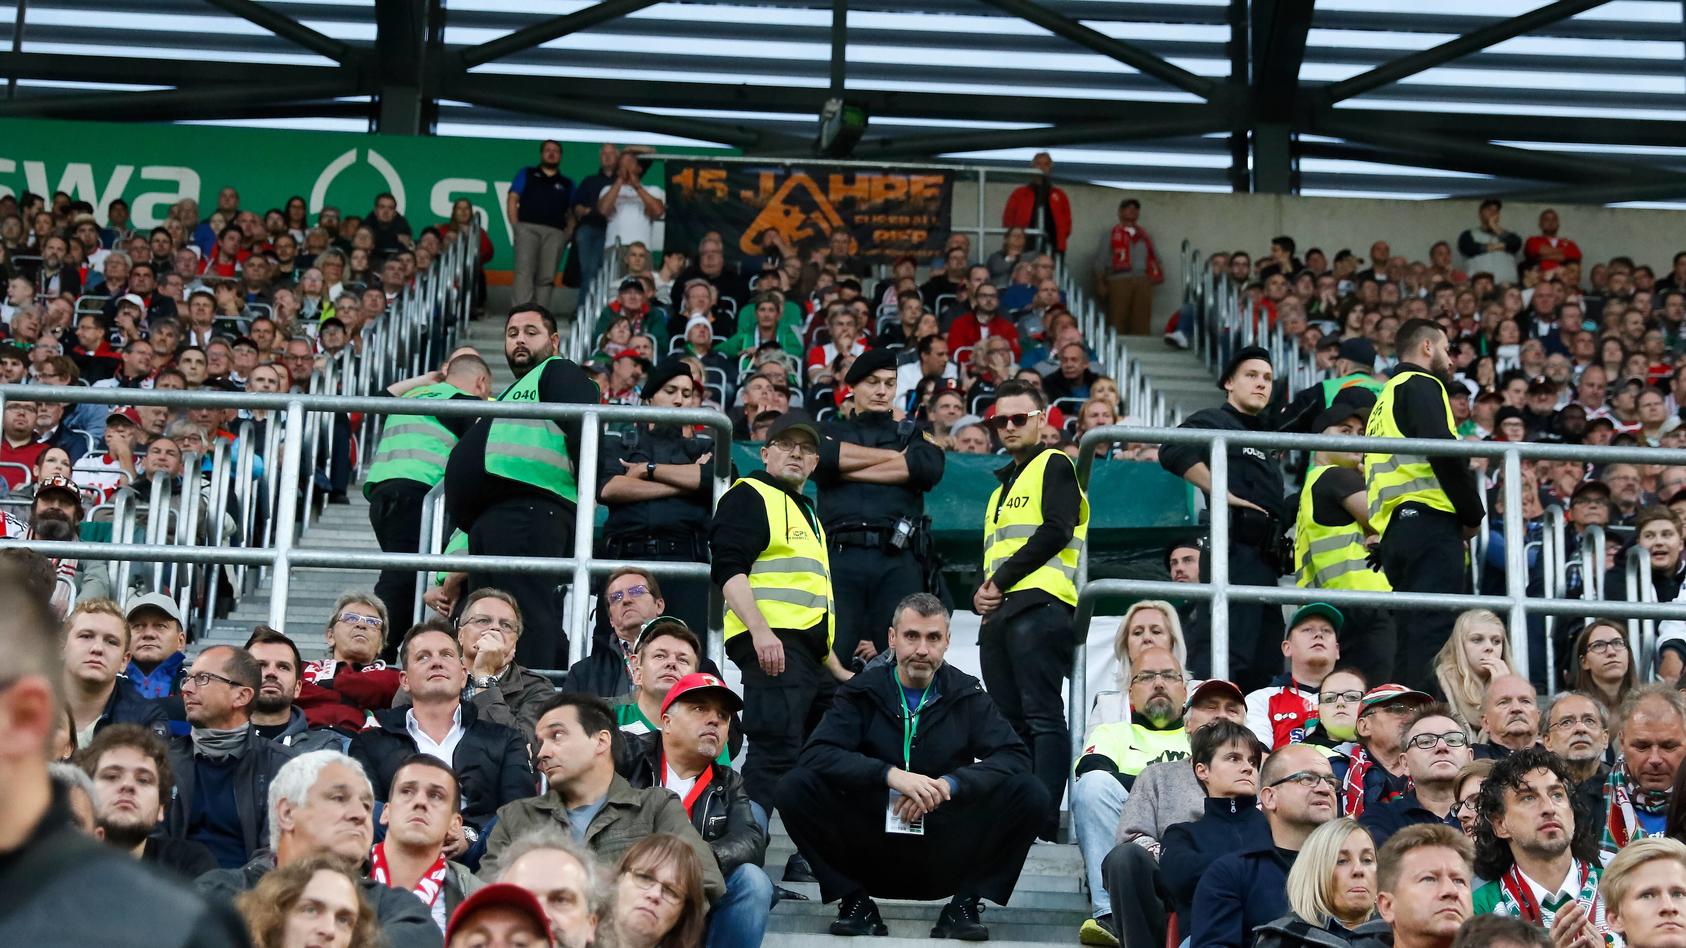 Nachdem ein Fan auf der Tribüne einen Herzstillstand erlitten hatte, stellten die Fans im Augsburger Stadion ihren Support zwischenzeitlich ein